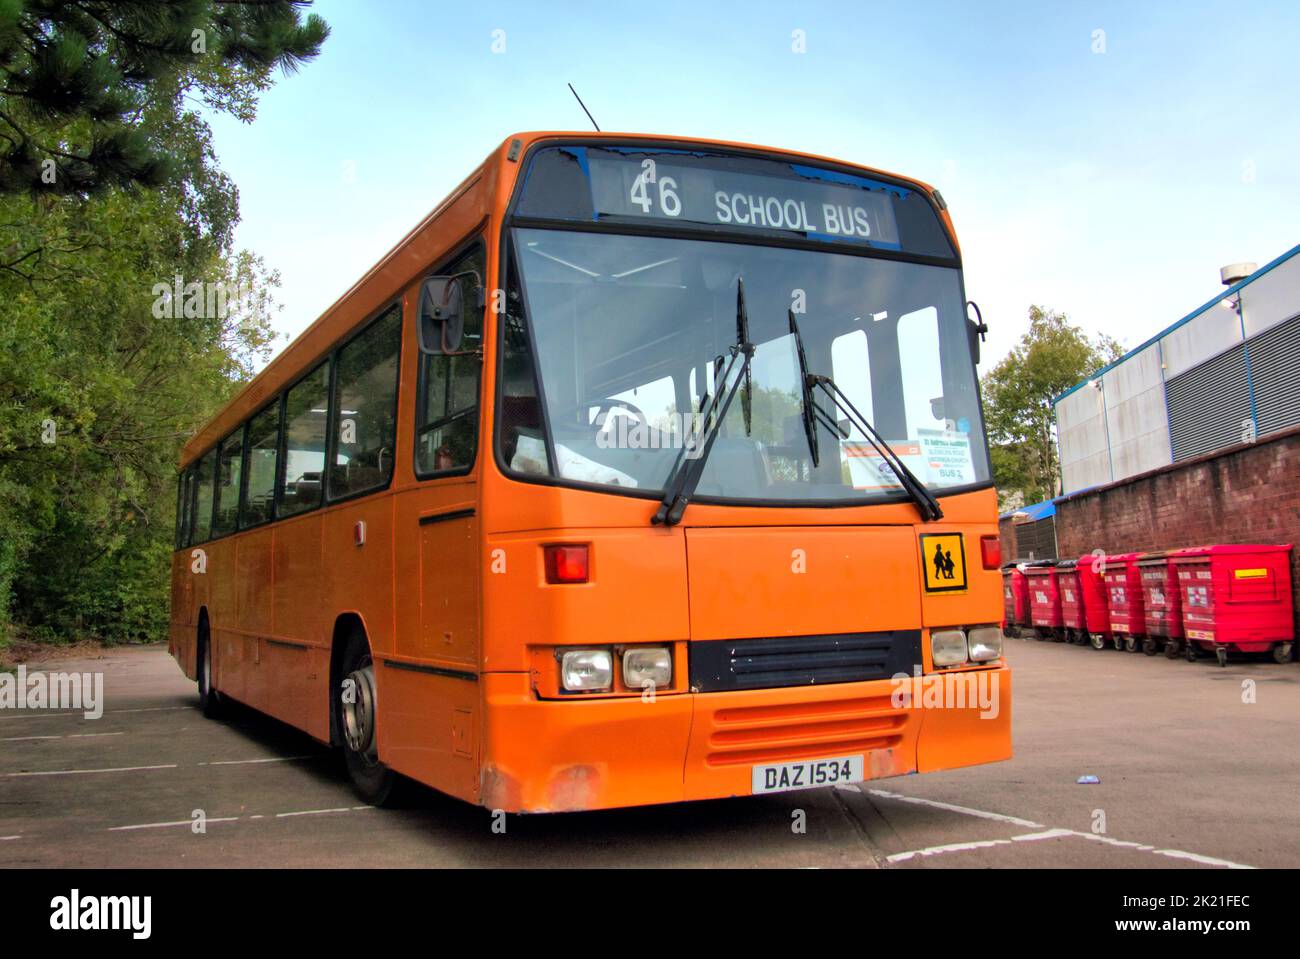 Bus scolaire orange 46 Glasgow, Écosse, Royaume-Uni Banque D'Images